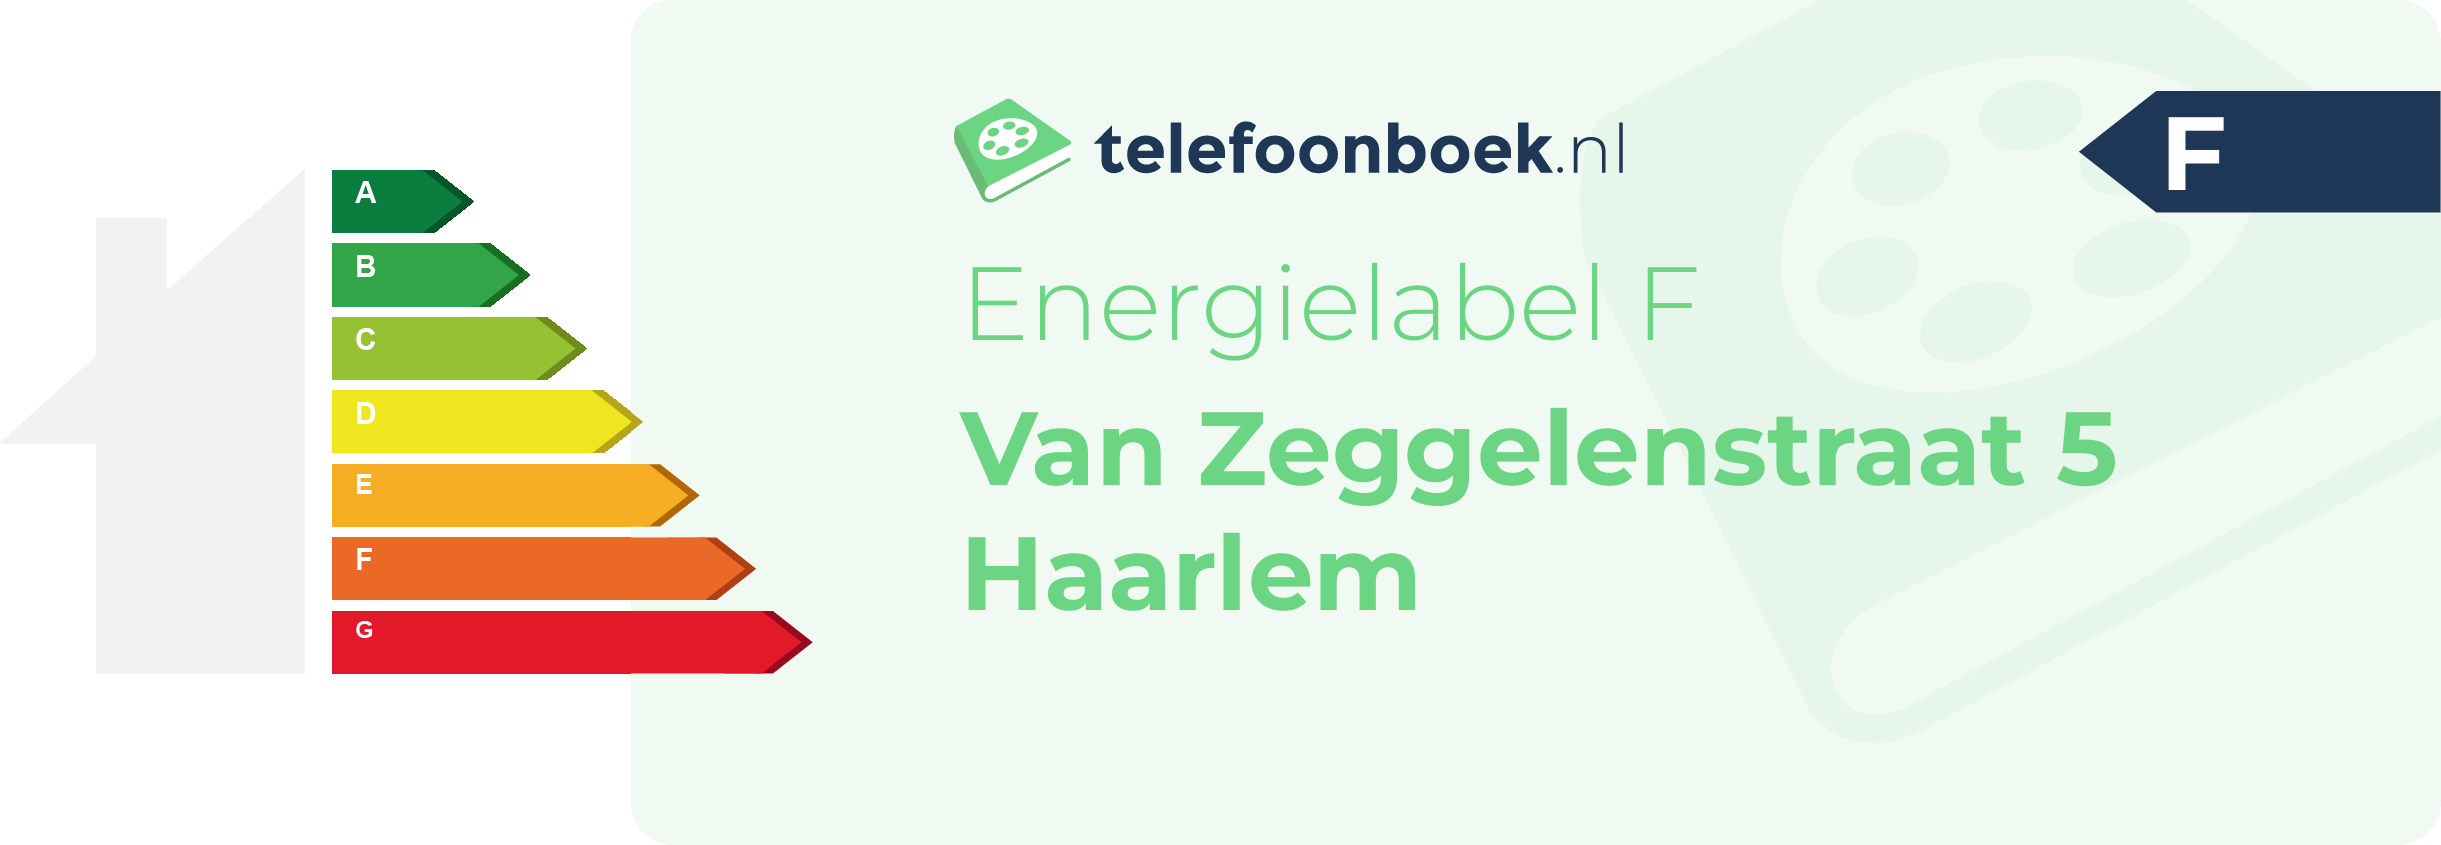 Energielabel Van Zeggelenstraat 5 Haarlem